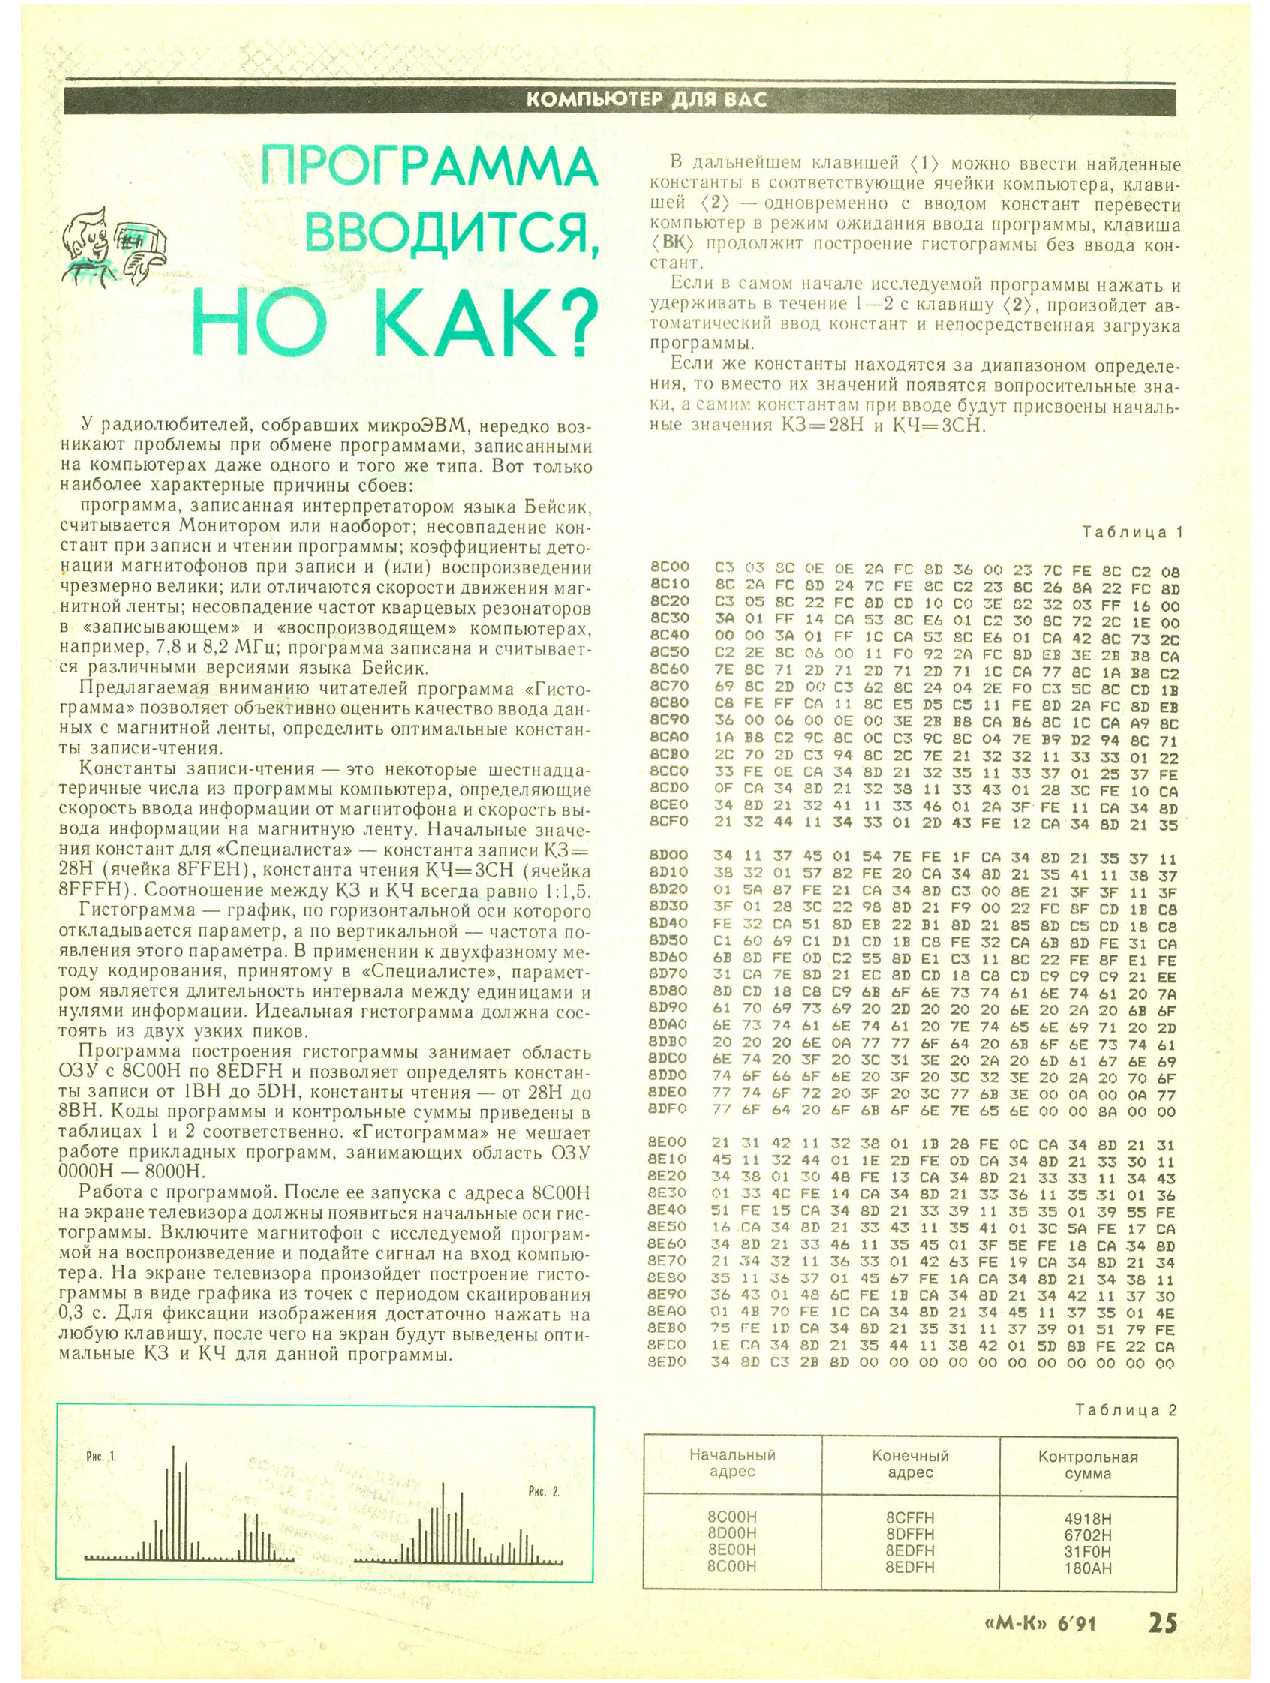 МК 6, 1991, 25 c.